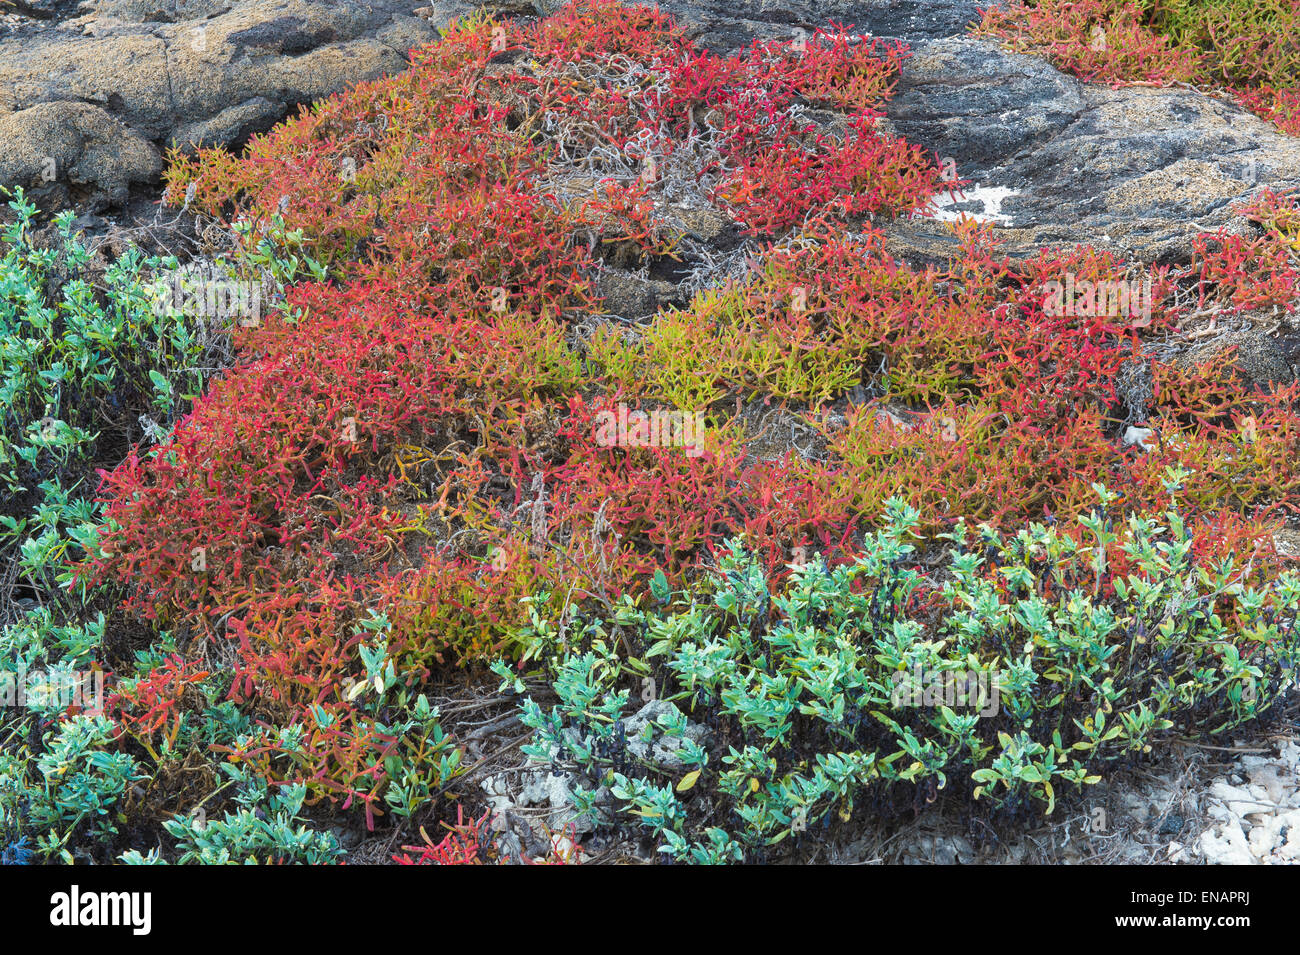 La végétation sur l'île Santiago, chapeau chinois, Galapagos, Equateur, Site du patrimoine mondial de l'UNESCO Banque D'Images